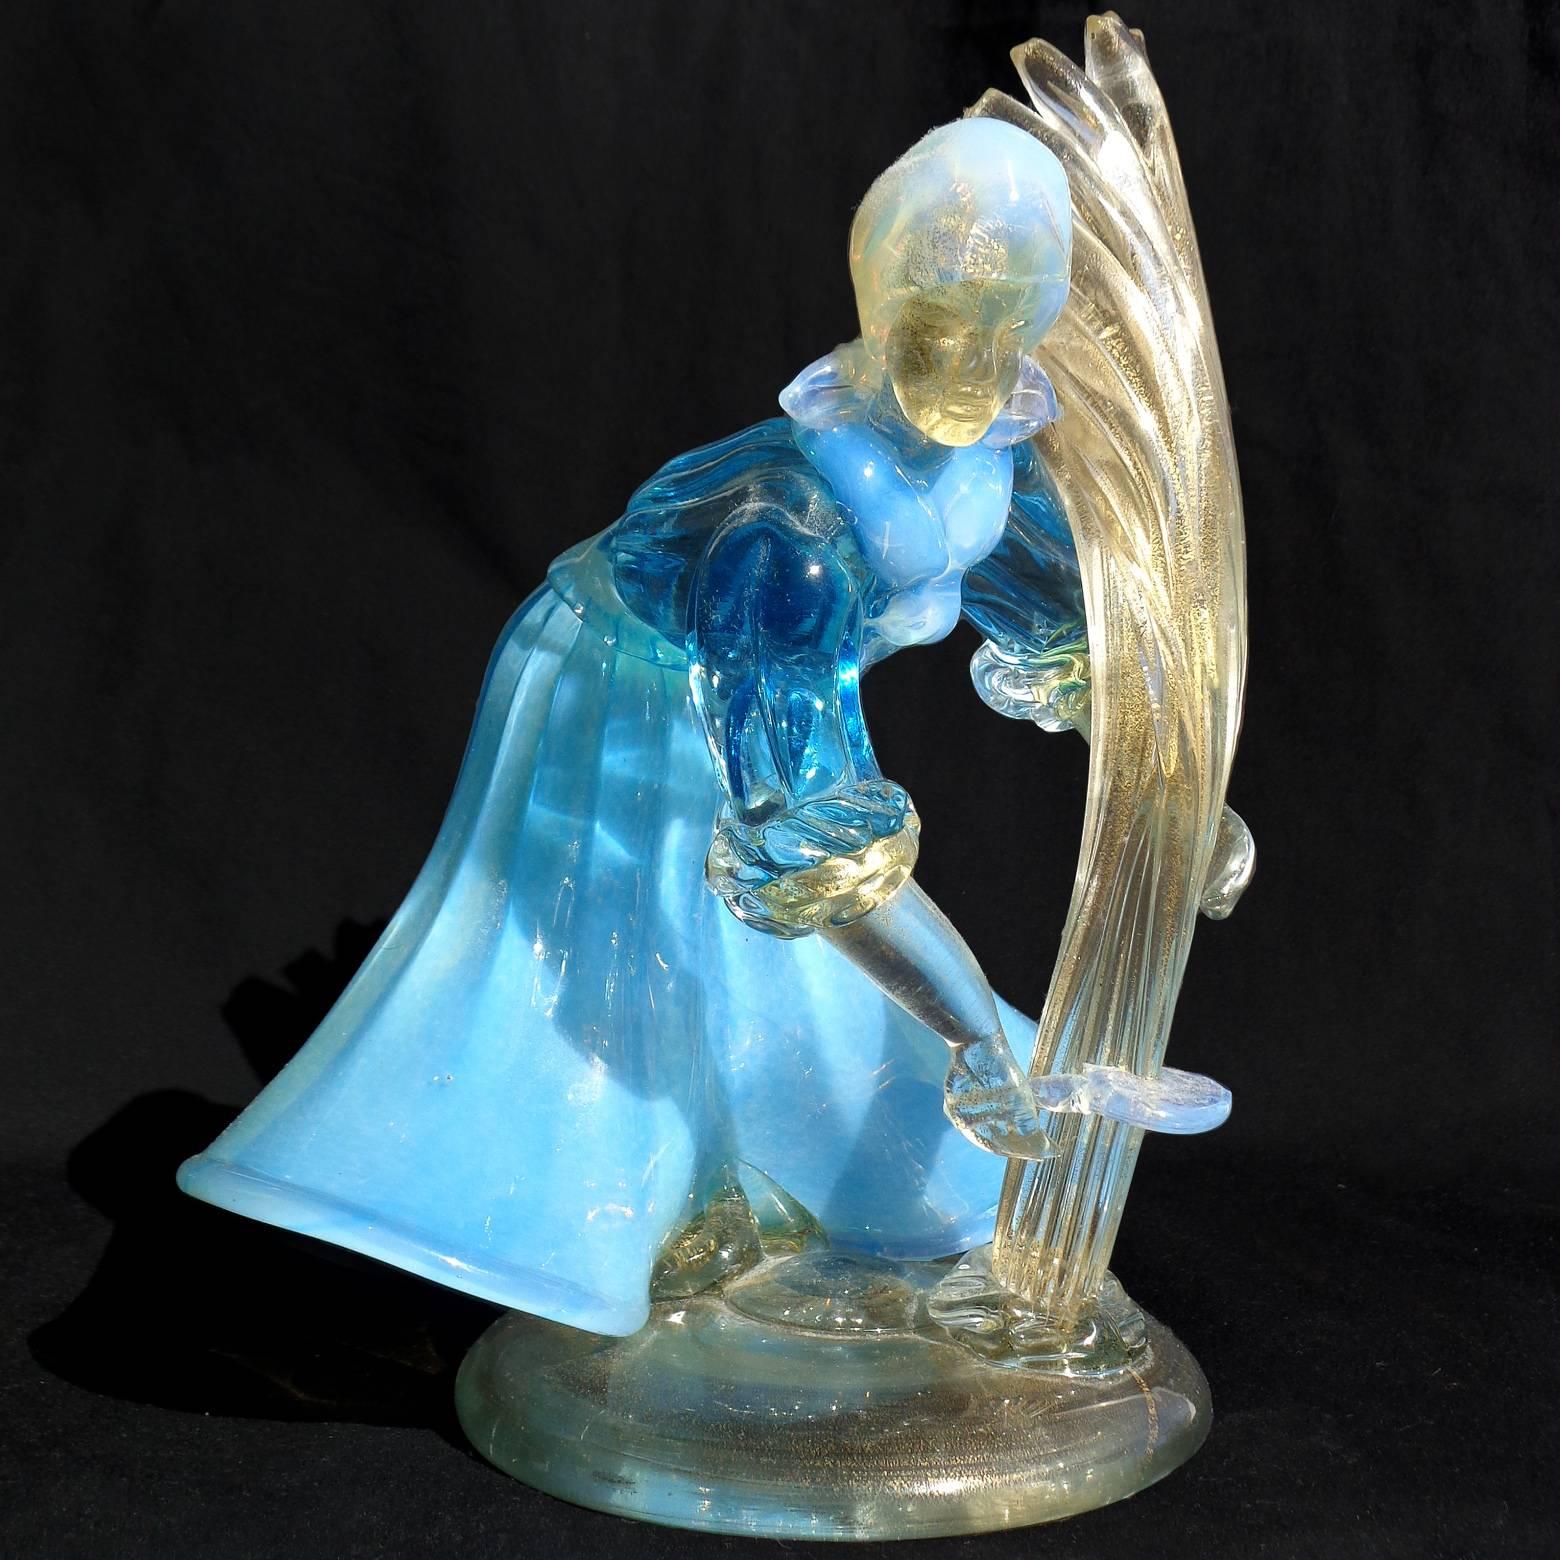 Magnifique verre d'art italien de Murano soufflé à la main, bleu et blanc opalescent, avec des mouchetures dorées, représentant une femme fermière. Attribué à la société A.Ve.M. (Arte Vetraria Muranese). La femme est en action, elle coupe sa